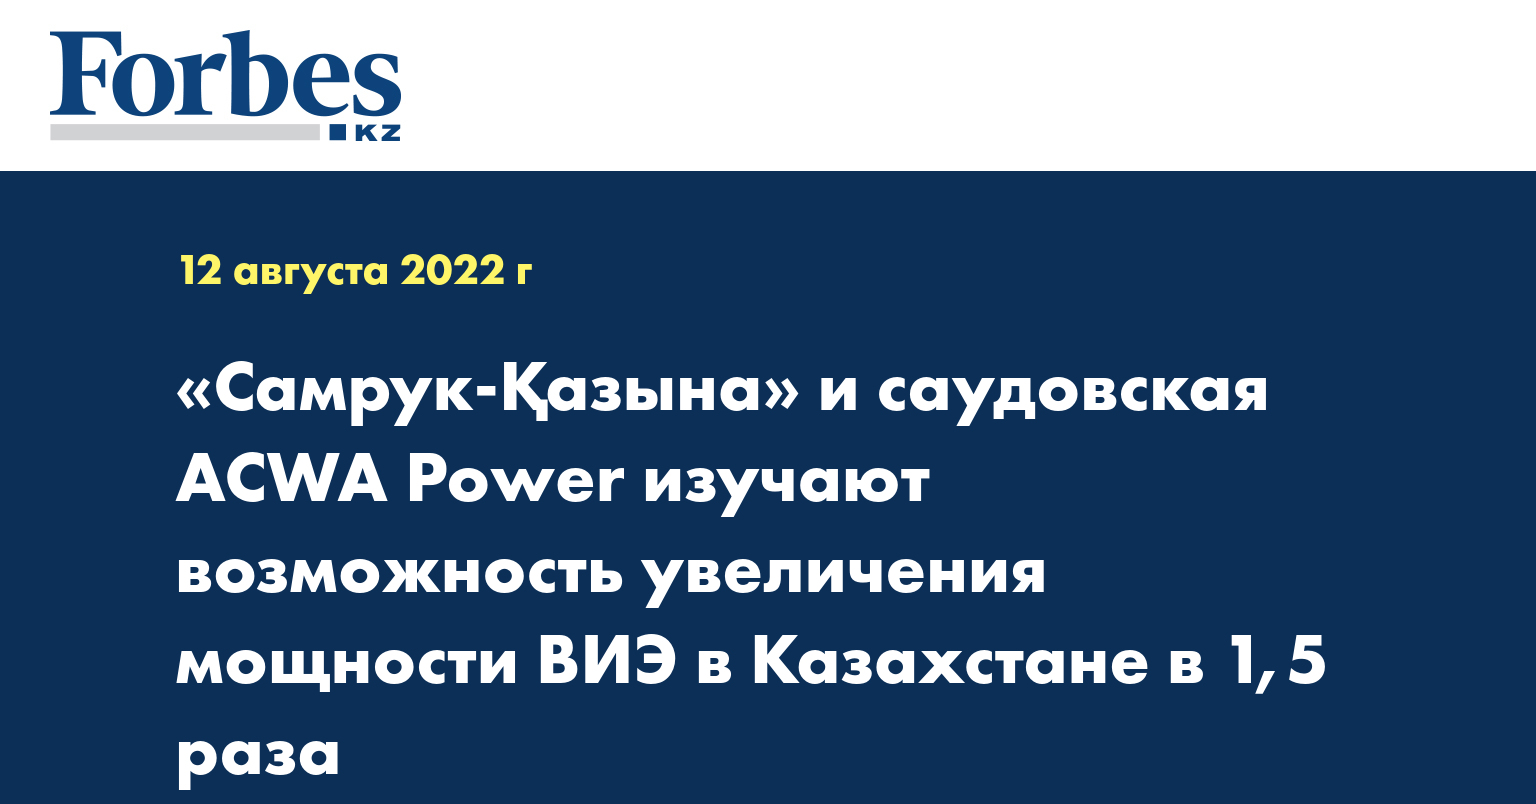 «Самрук-Қазына» и саудовская ACWA Power изучают возможность увеличения мощности ВИЭ в Казахстане в 1,5 раза